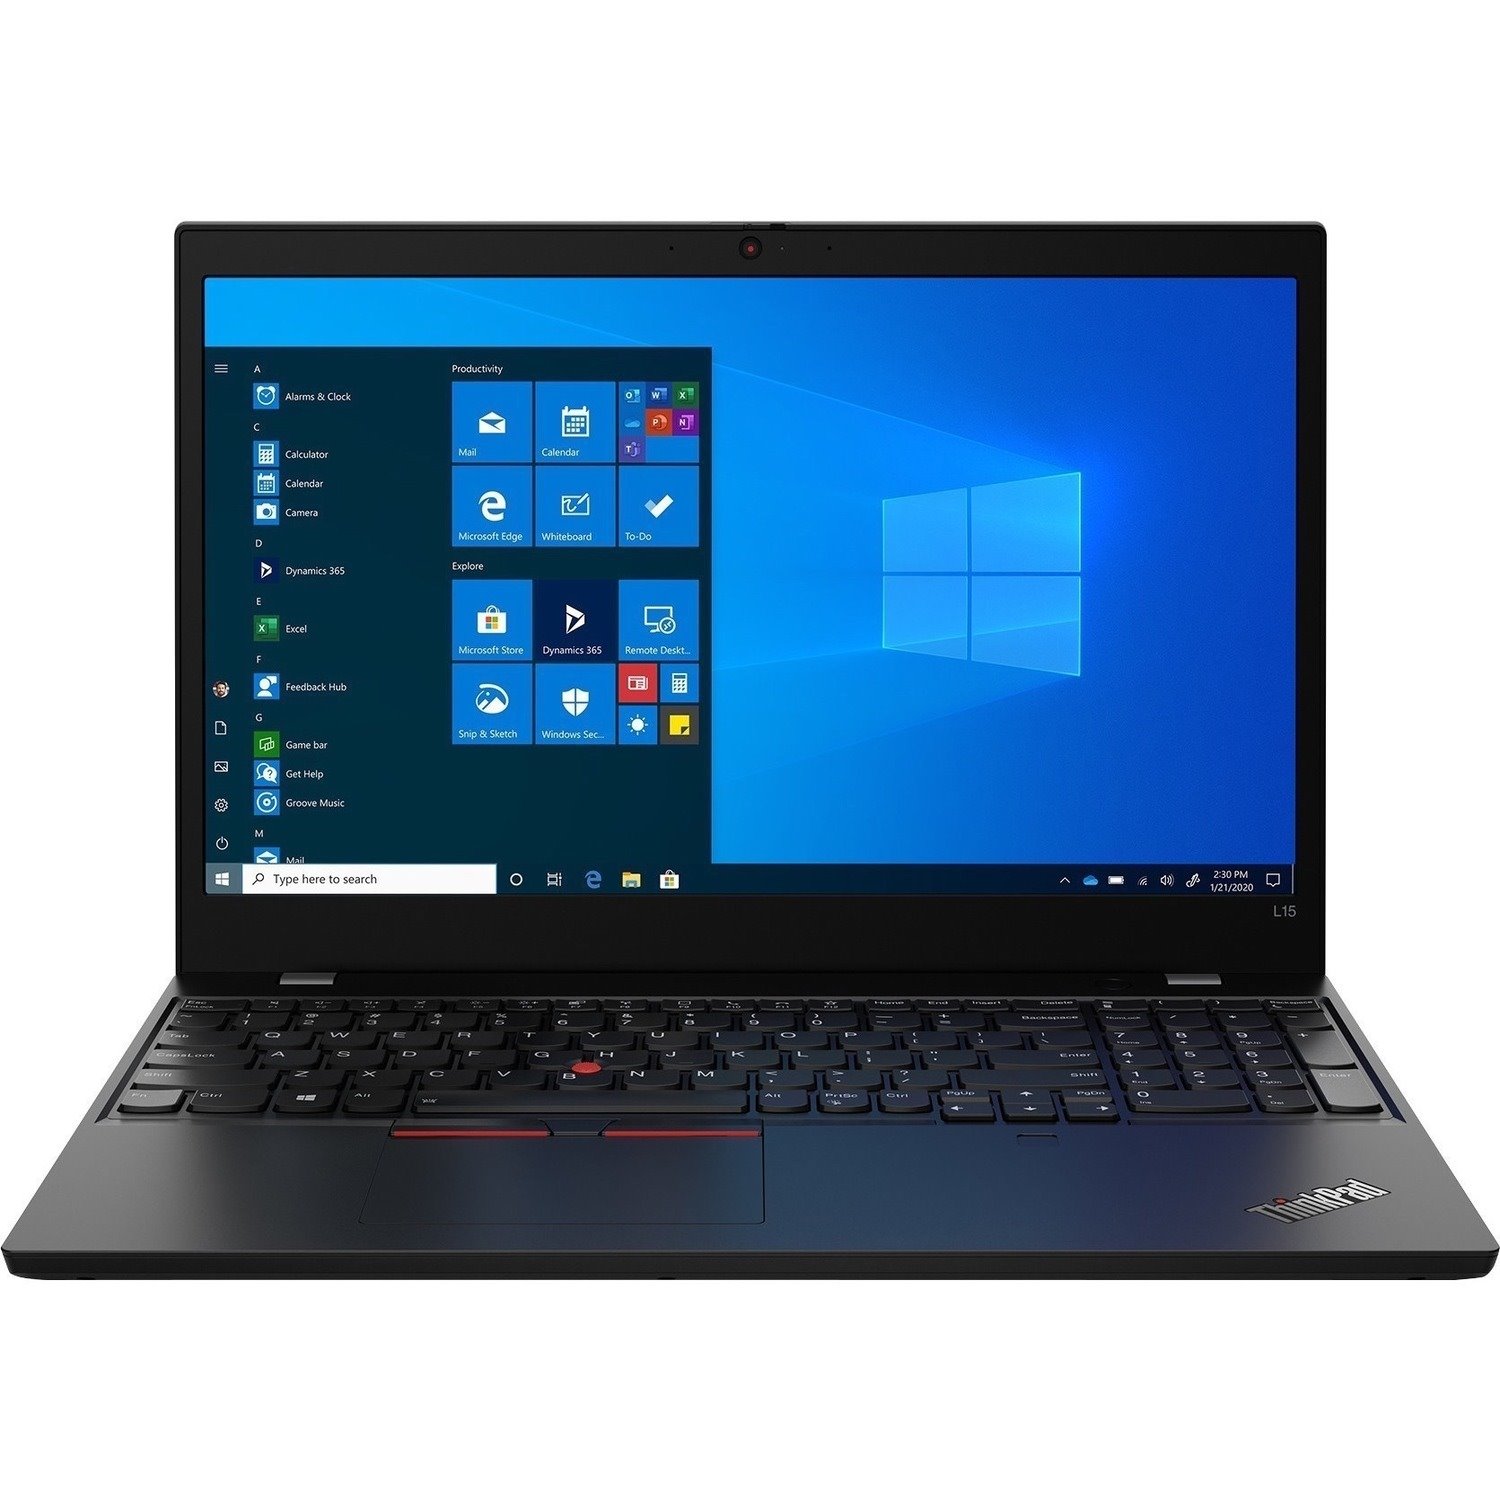 Lenovo ThinkPad L15 Gen2 20X30069AU 15.6" Notebook - Full HD - 1920 x 1080 - Intel Core i7 11th Gen i7-1165G7 Quad-core (4 Core) 2.80 GHz - 16 GB Total RAM - 512 GB SSD - Black